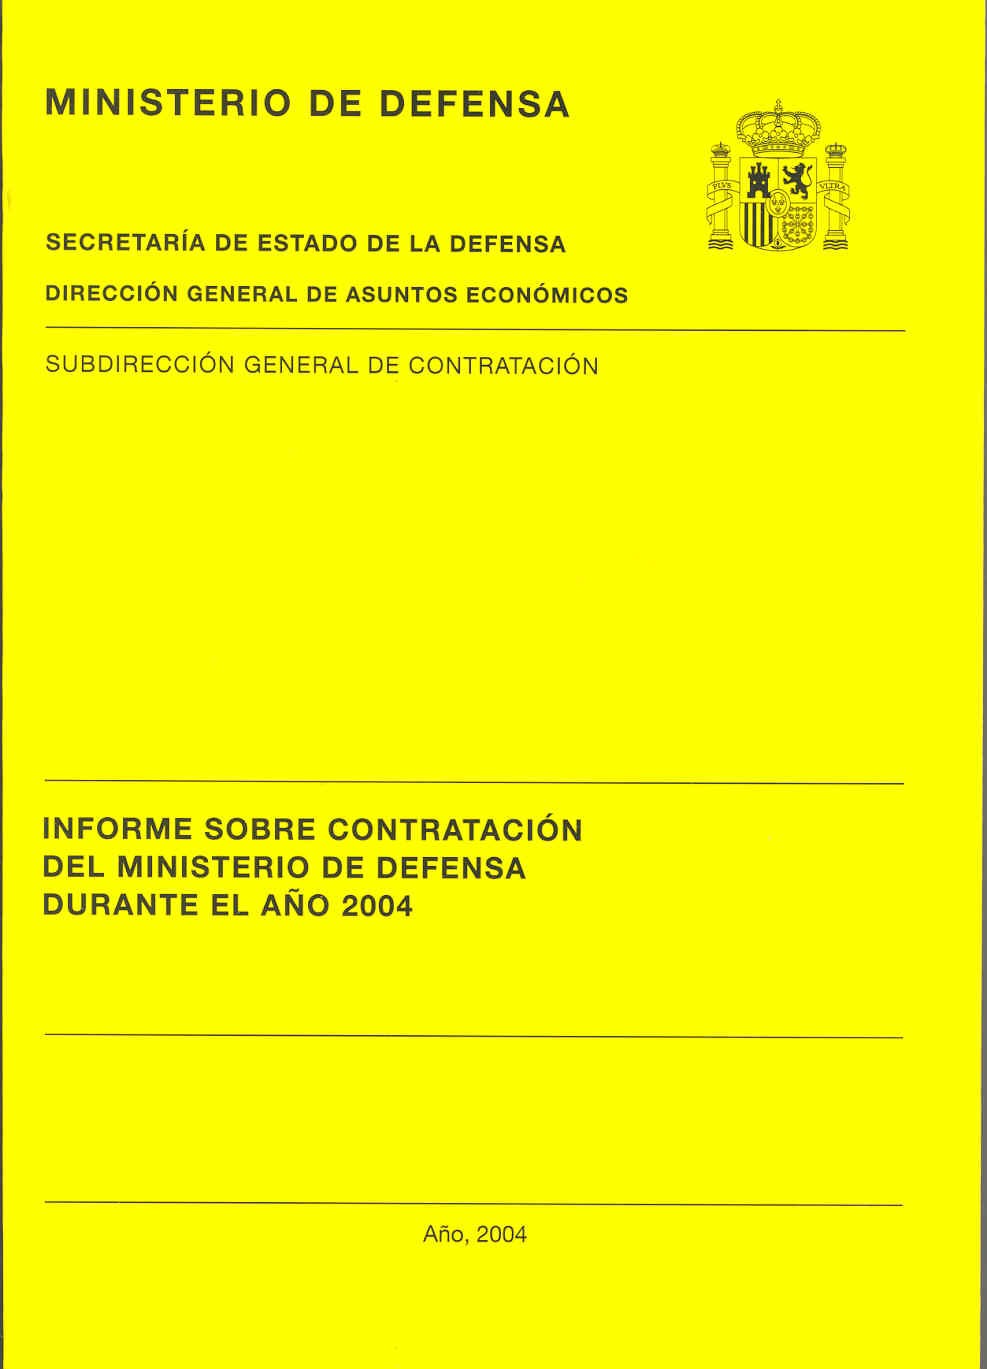 INFORME SOBRE CONTRATACIÓN DEL MINISTERIO DE DEFENSA DURANTE EL AÑO 2004